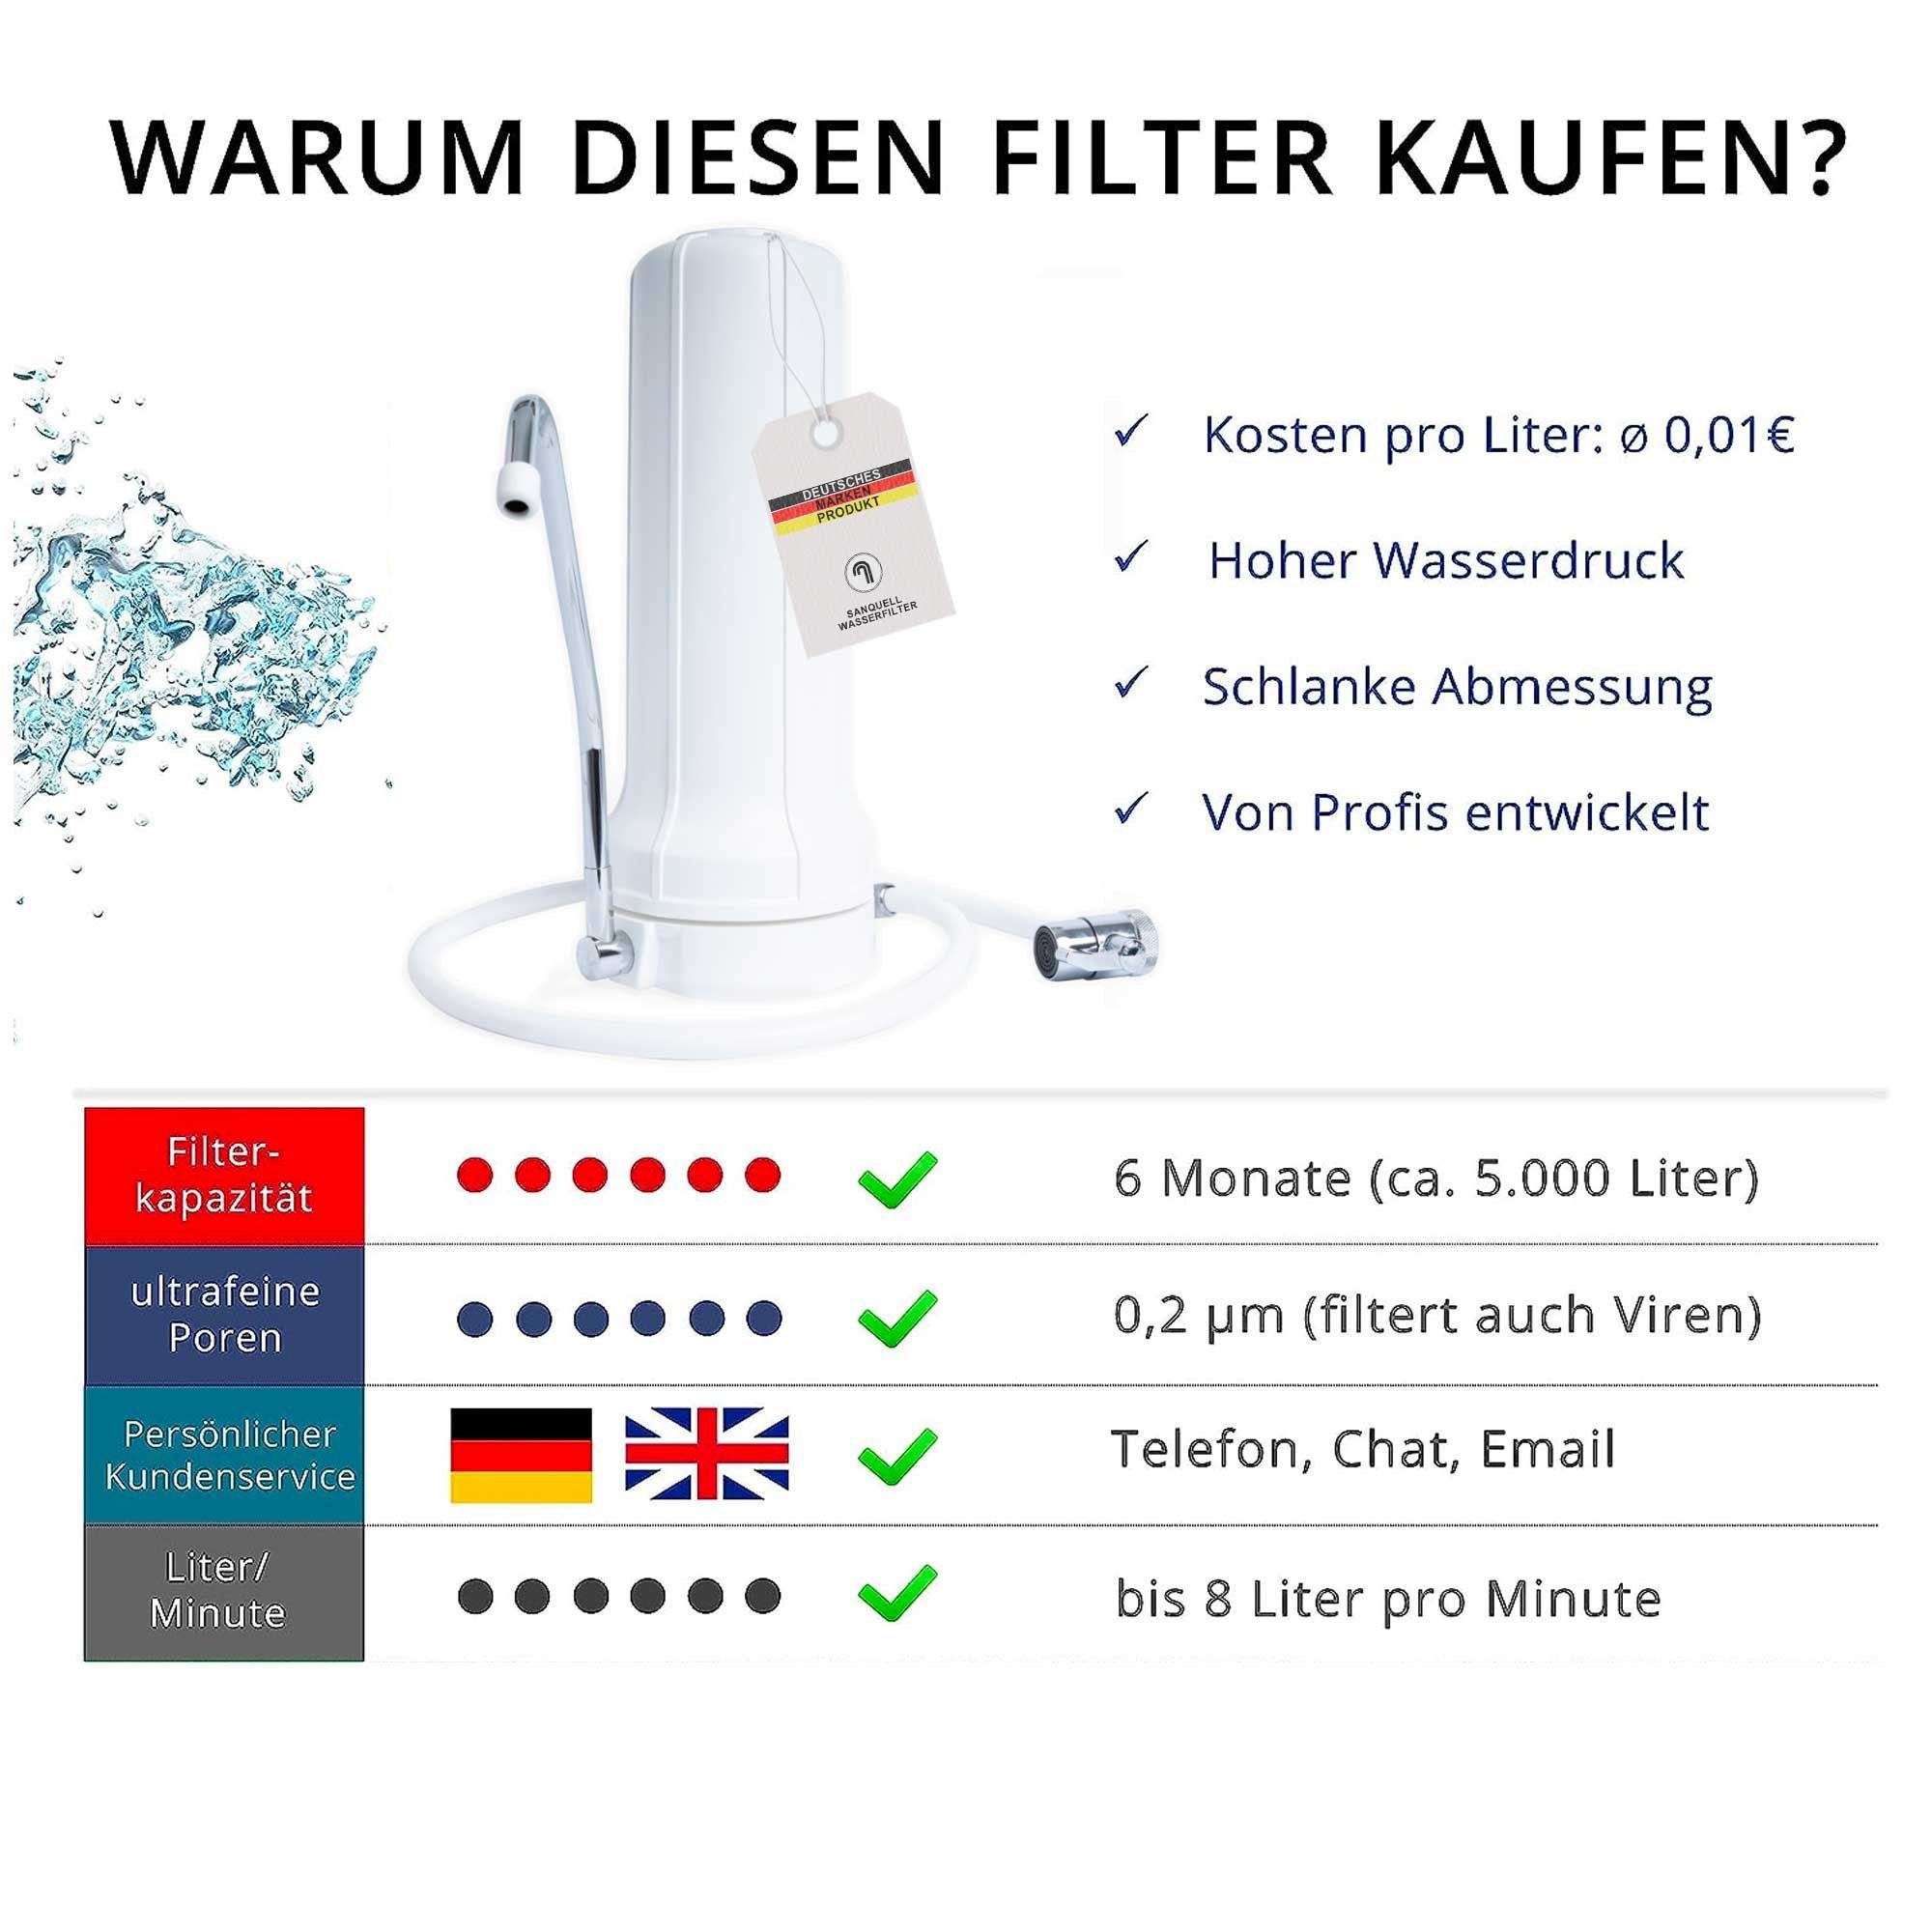 Simply, Filterung, deutsche Marke mehrstufe Auftisch Wasserfilter sanquell